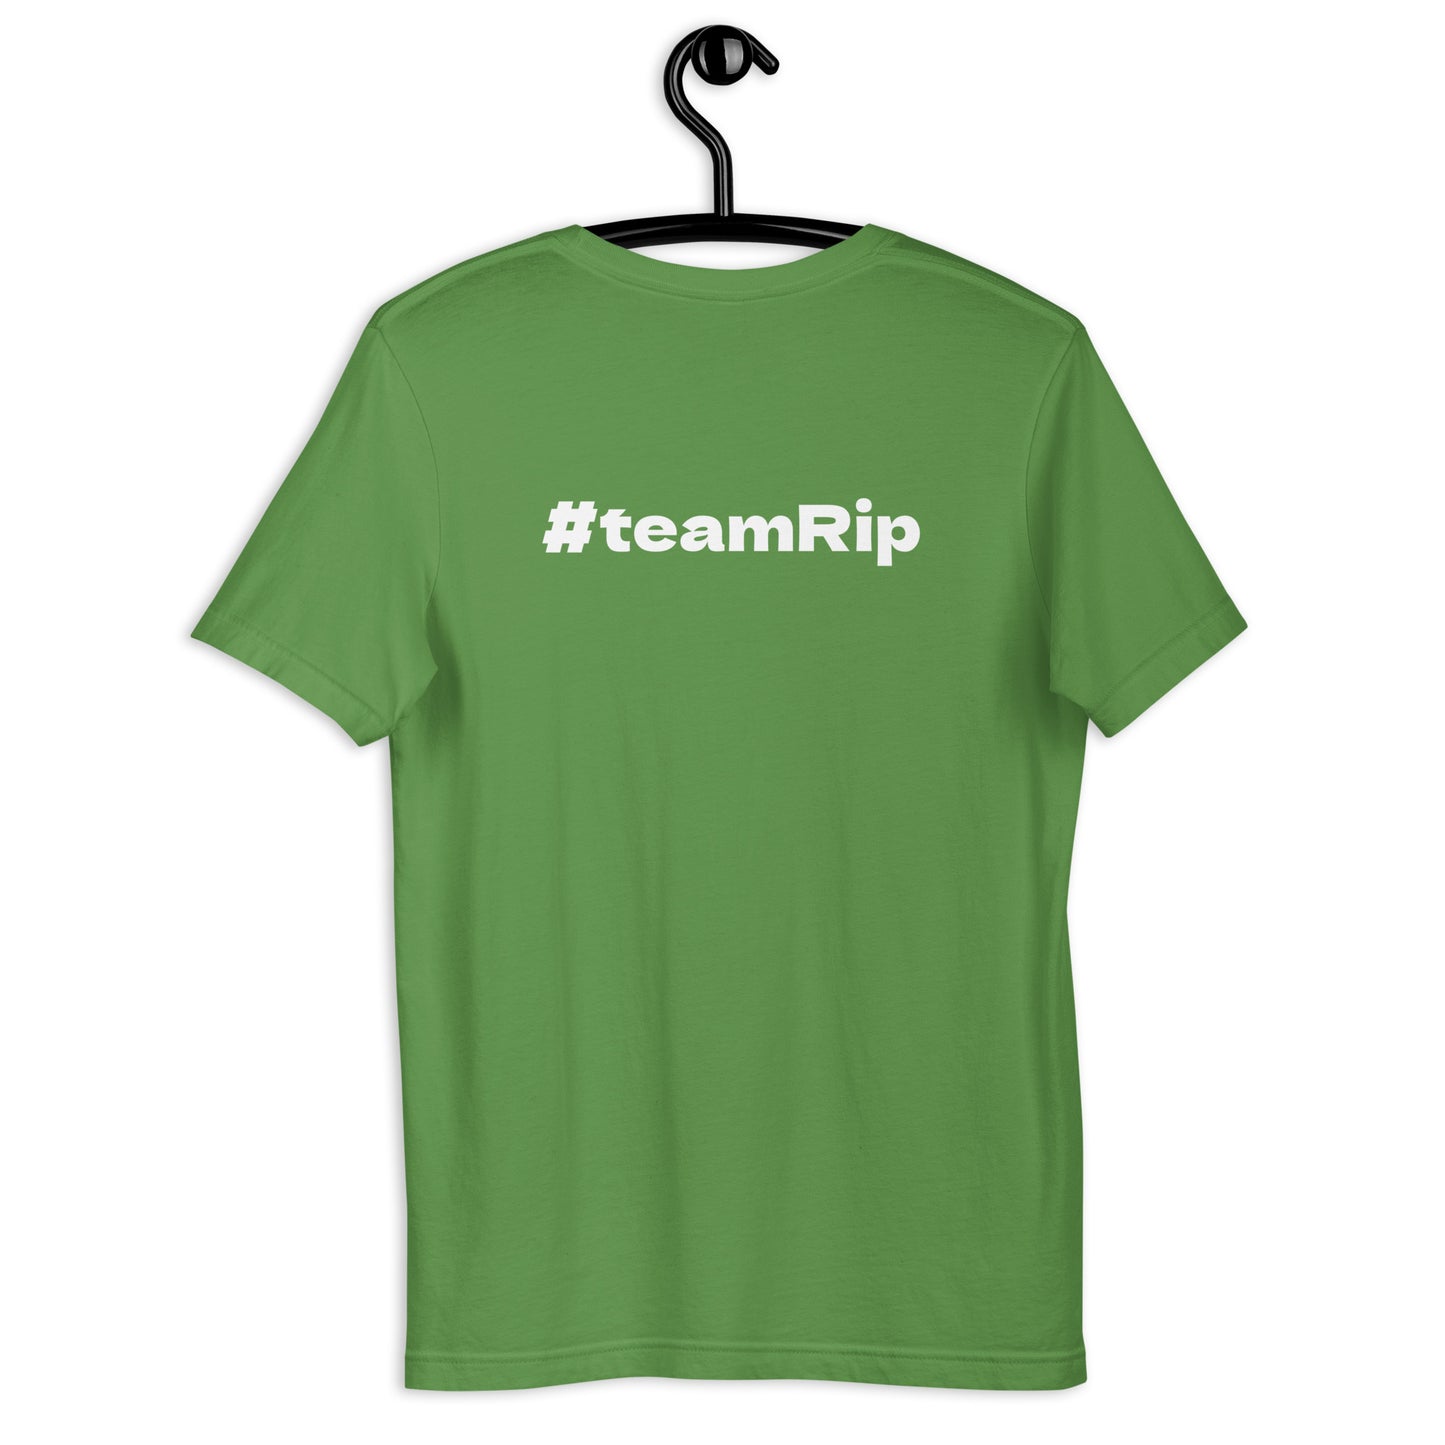 FASTCAT RELEASER - #teamRip - Unisex t-shirt